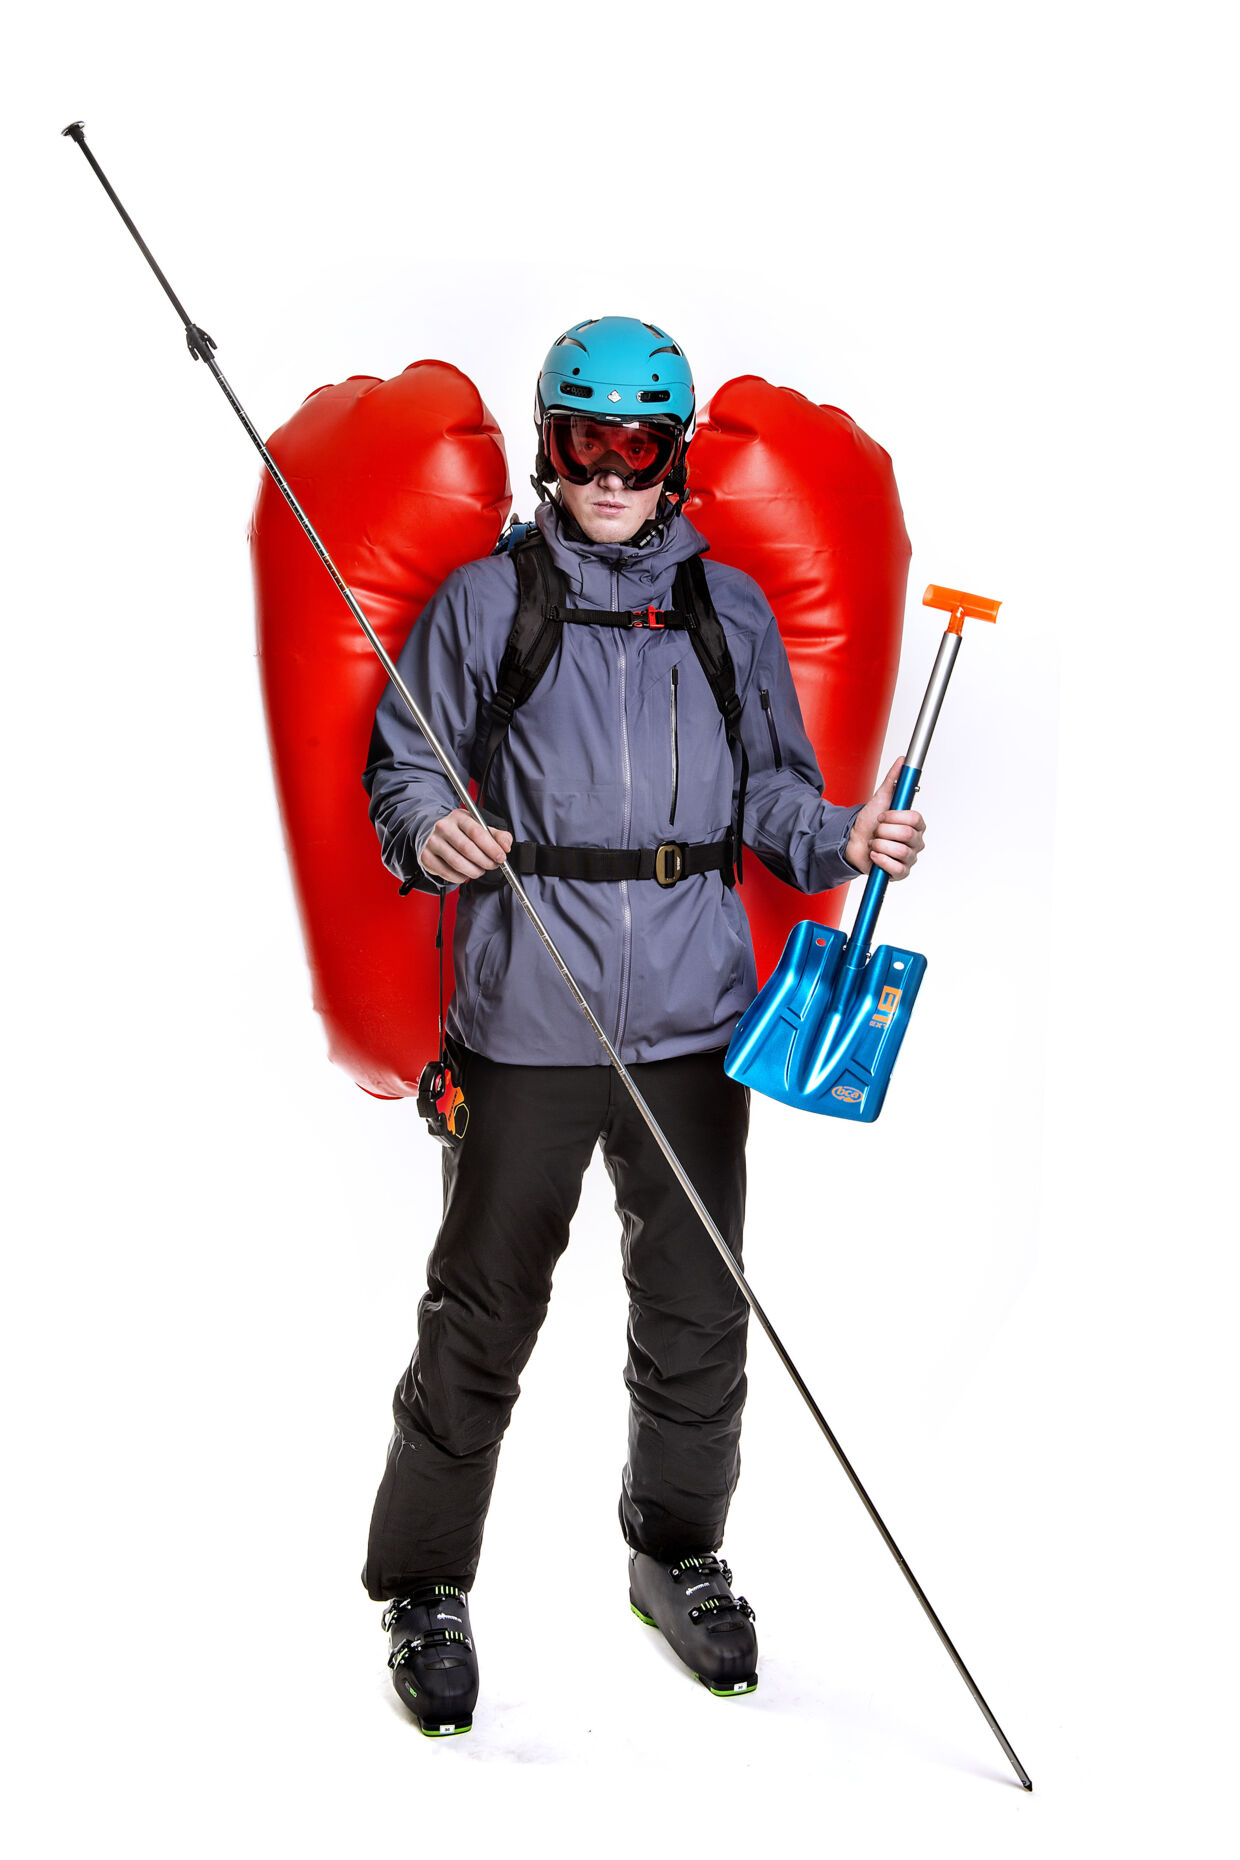 Sikkerhedsudstyr til skituren. Rygsæk med airbag, der kan redde dit liv hvis der kommer laviner, skovl, alu probe og GPS tracker. Bax Lindhardt